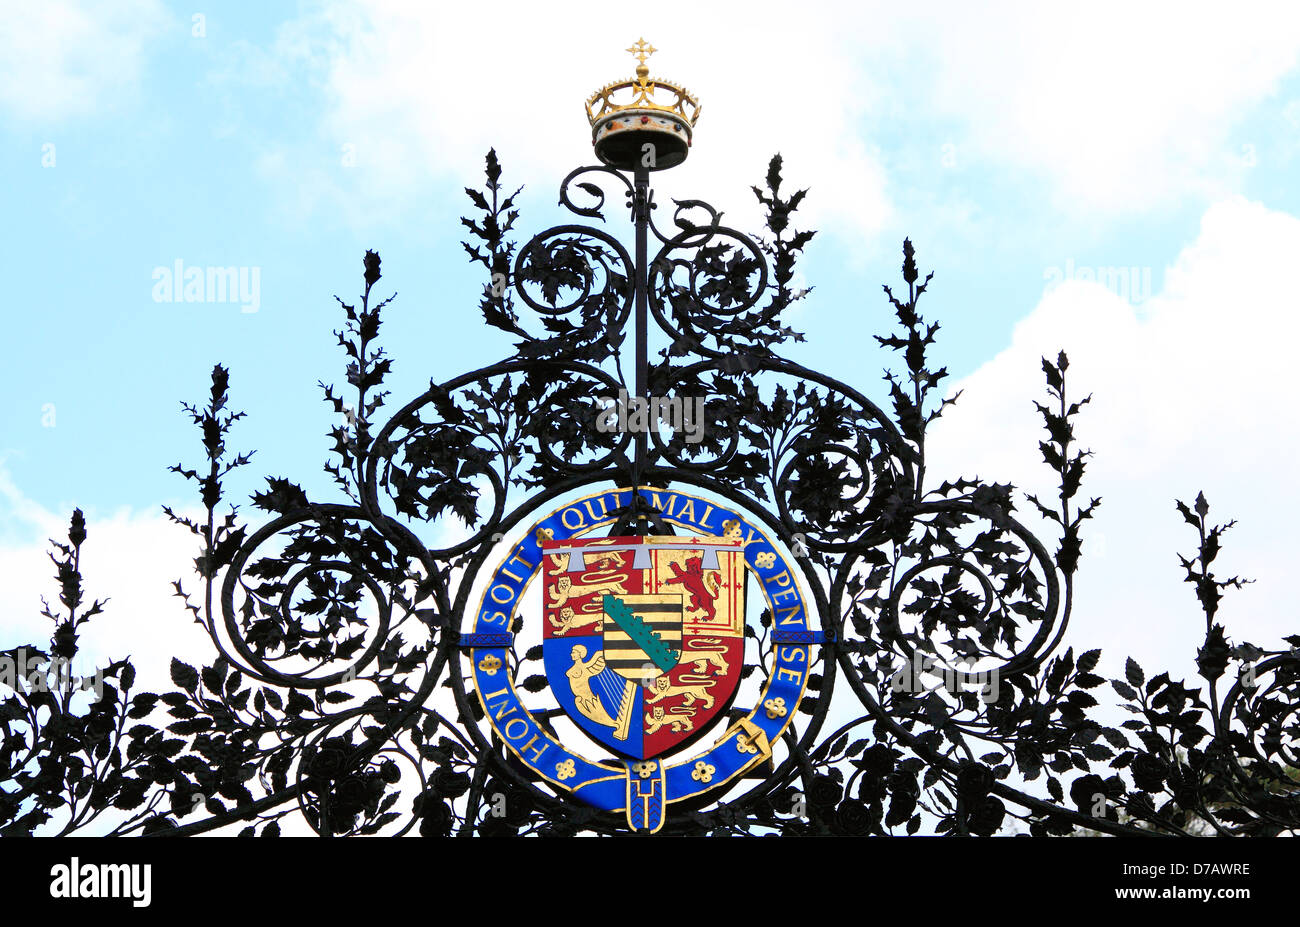 Portes de Norwich, conçu par Thomas Jekyll, Sandringham, Norfolk, détail des armoiries royales, England UK Banque D'Images